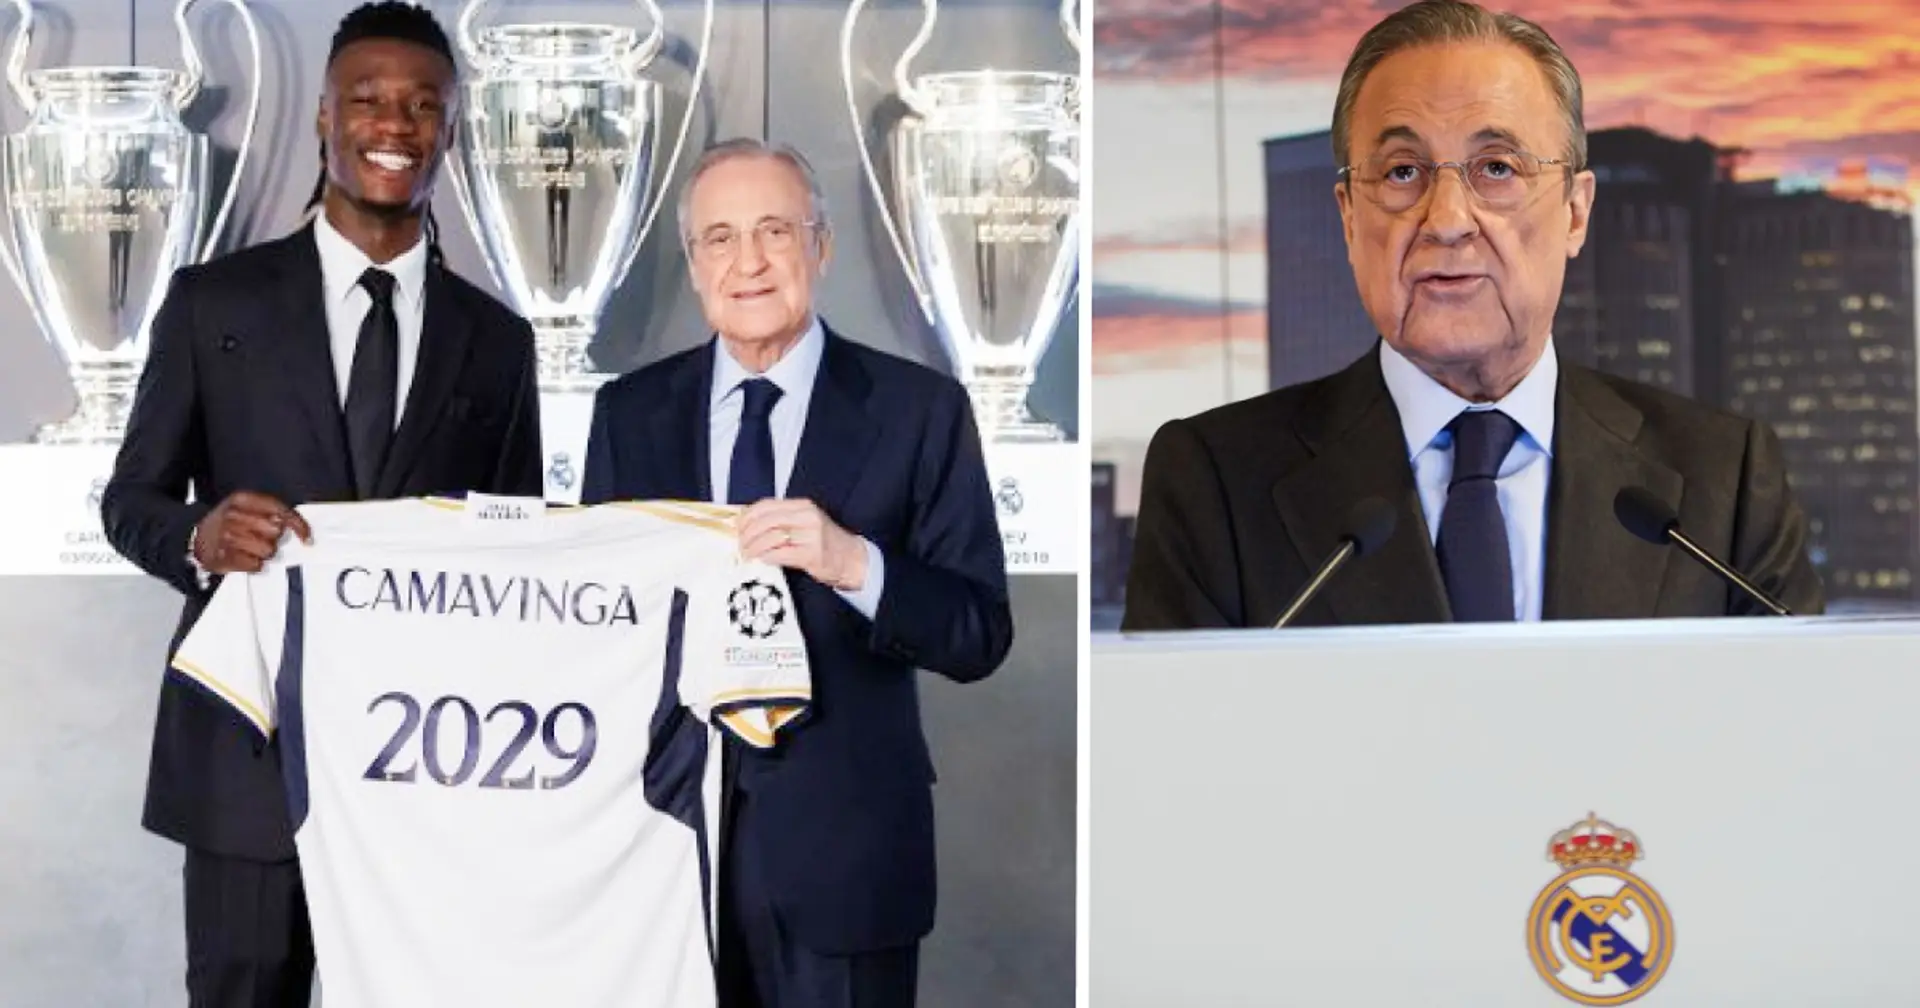 Tres jugadores clave firman contratos a largo plazo con el Real Madrid, queda uno más